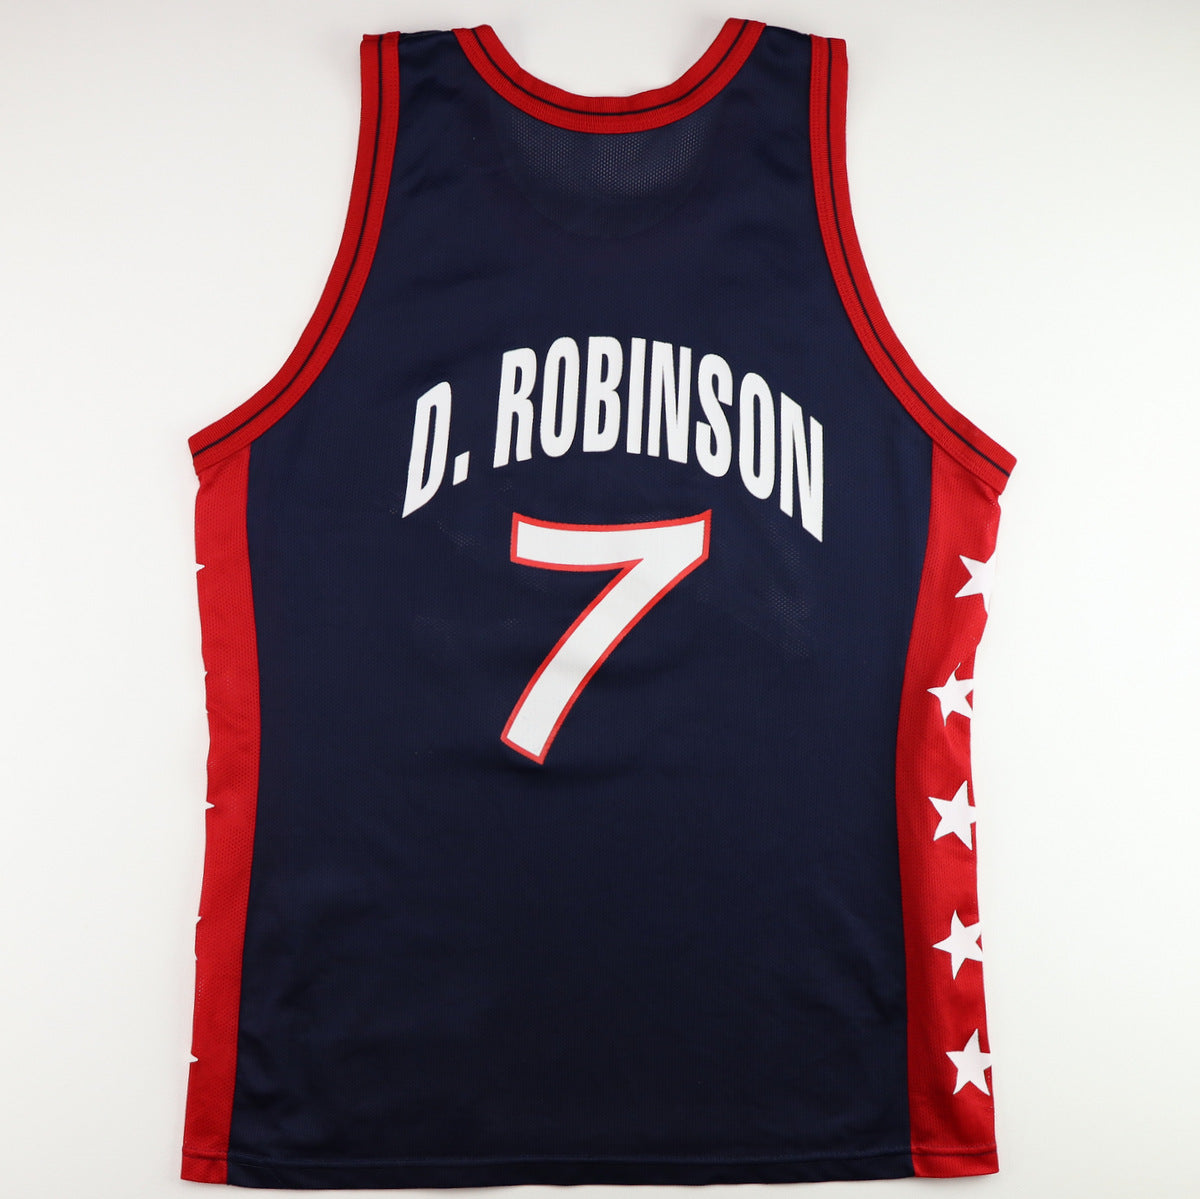 Champion USA Olympic Basketball Jersey David Robinson 5 Men Size